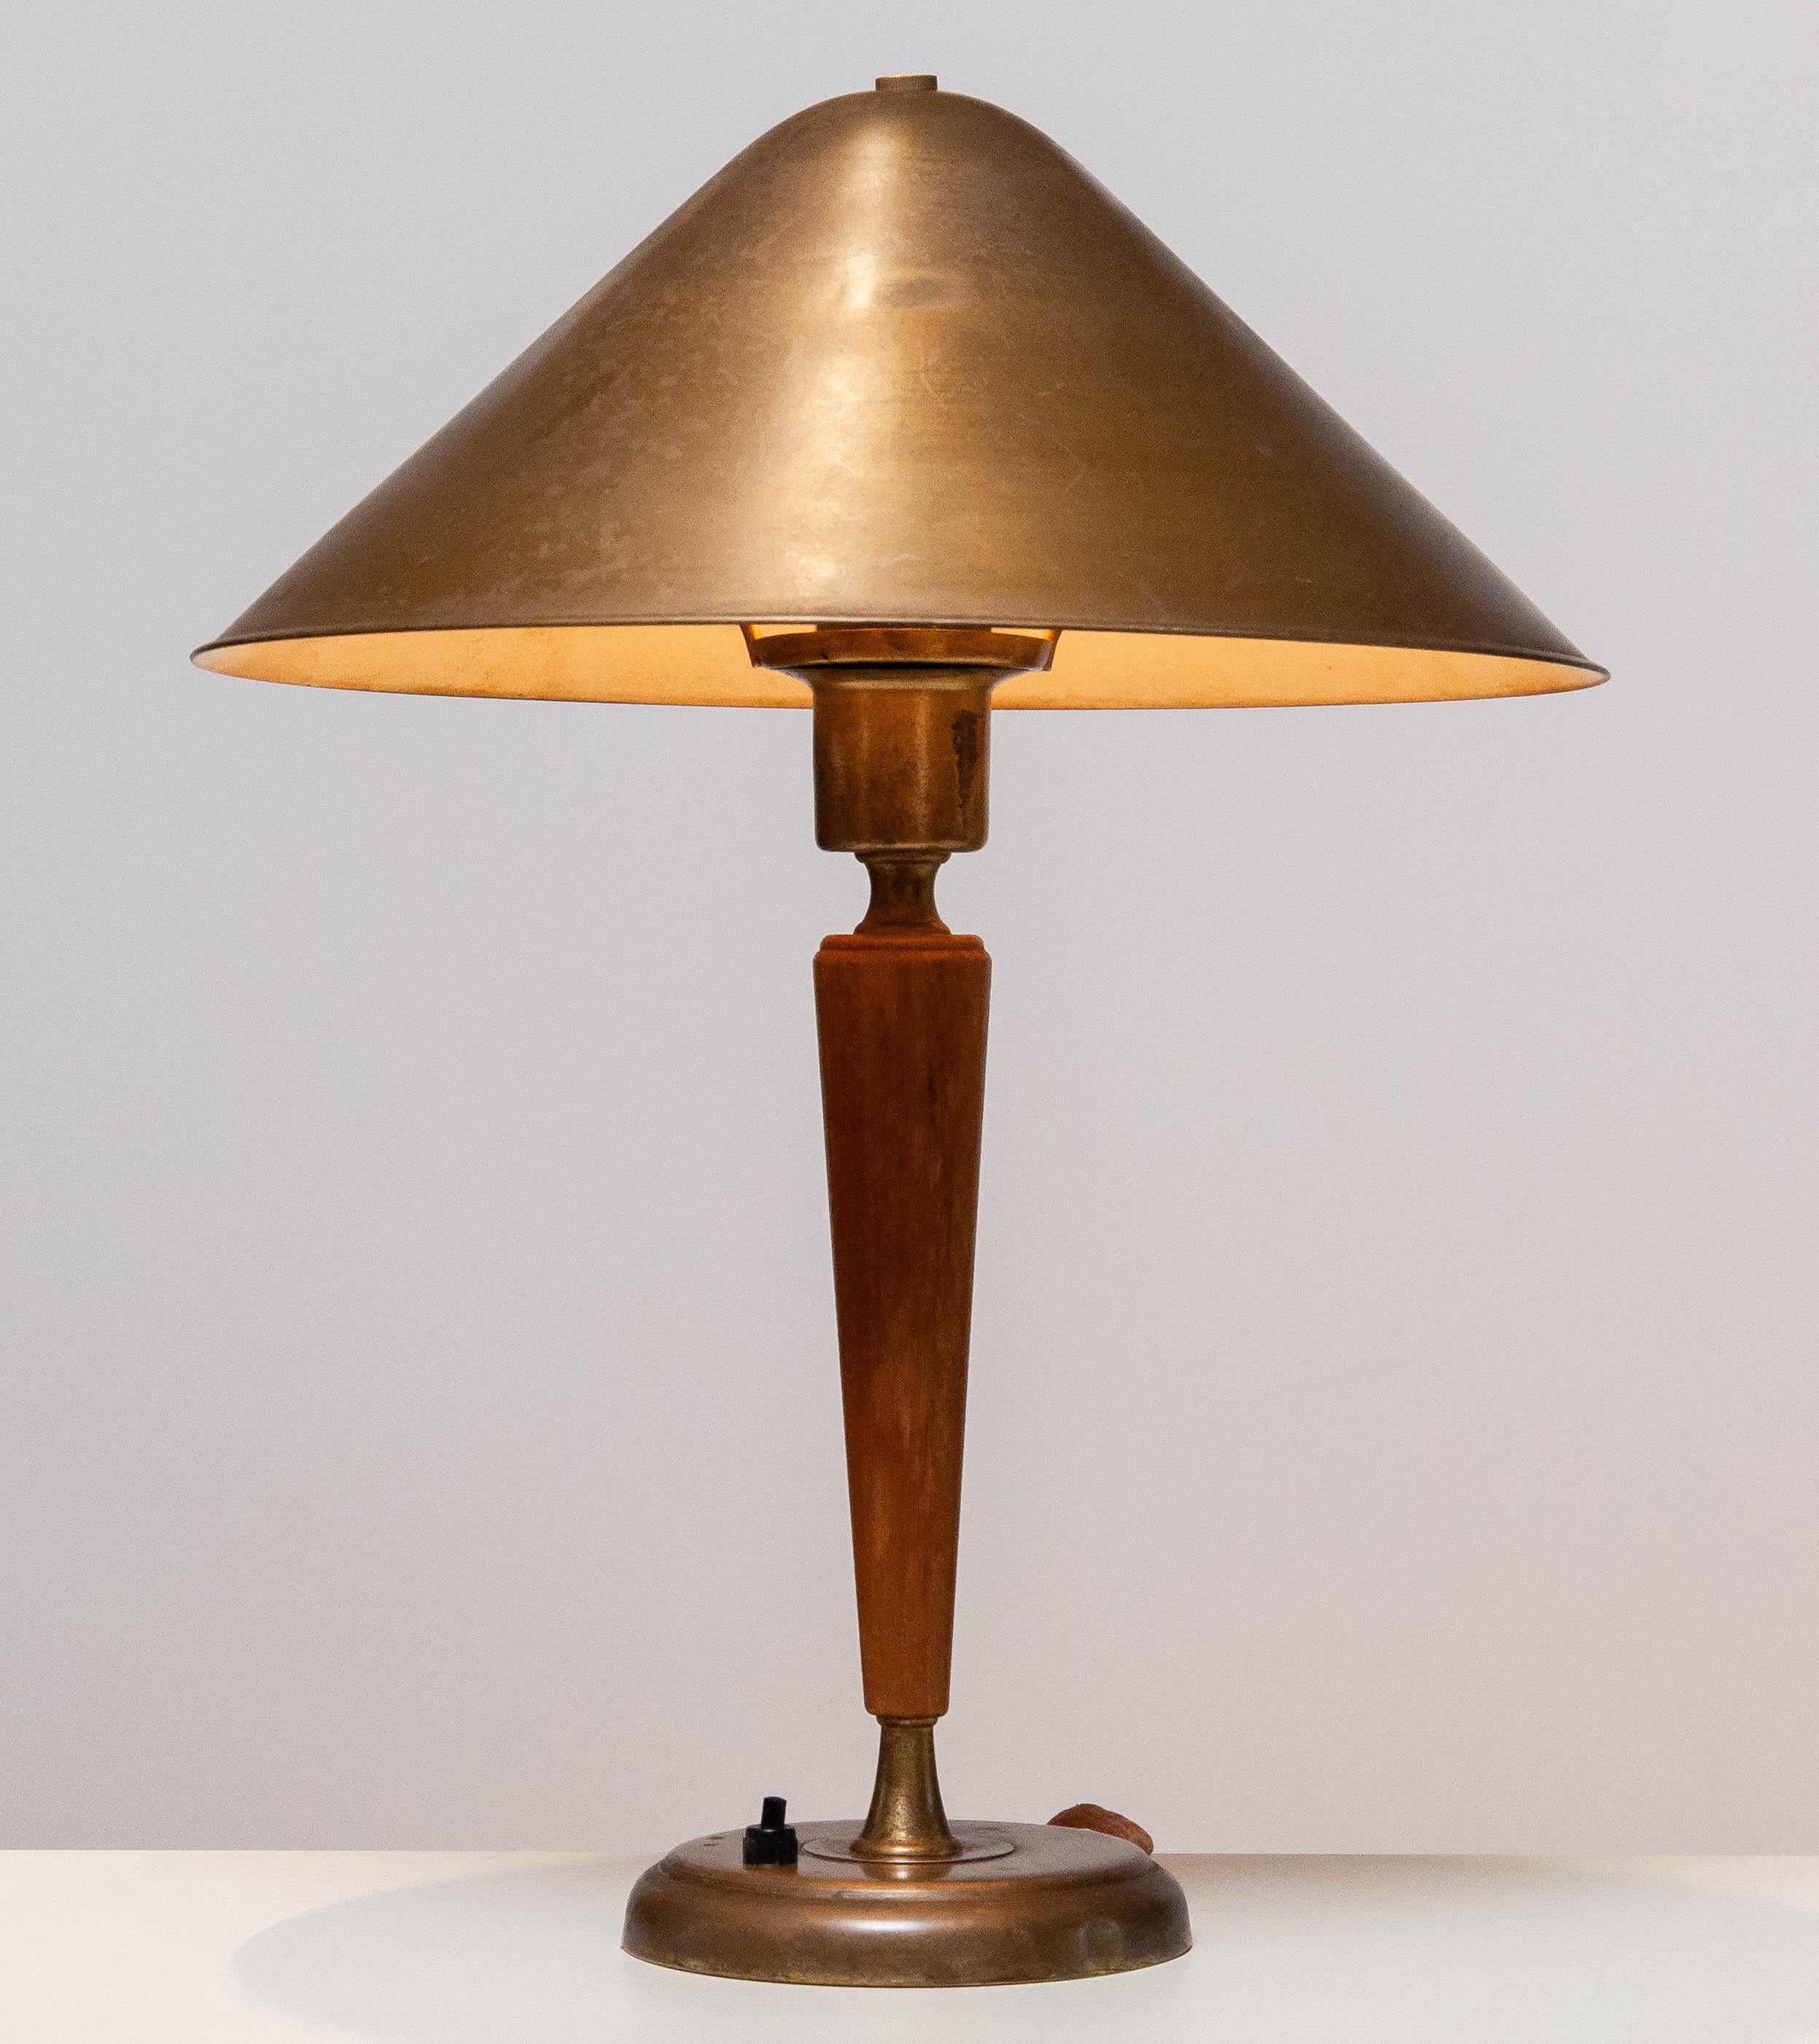 Messing und Ulme modernistischen Tisch / Schreibtischlampe mit schönen Patina wahr die Jahre von Harald Norton für Böhlmarks in Schweden aus den 1940er Jahren. 
Der Schirm ist im Winkel verstellbar.
Besteht aus einer E27 / 28 Schraubfassung für 110